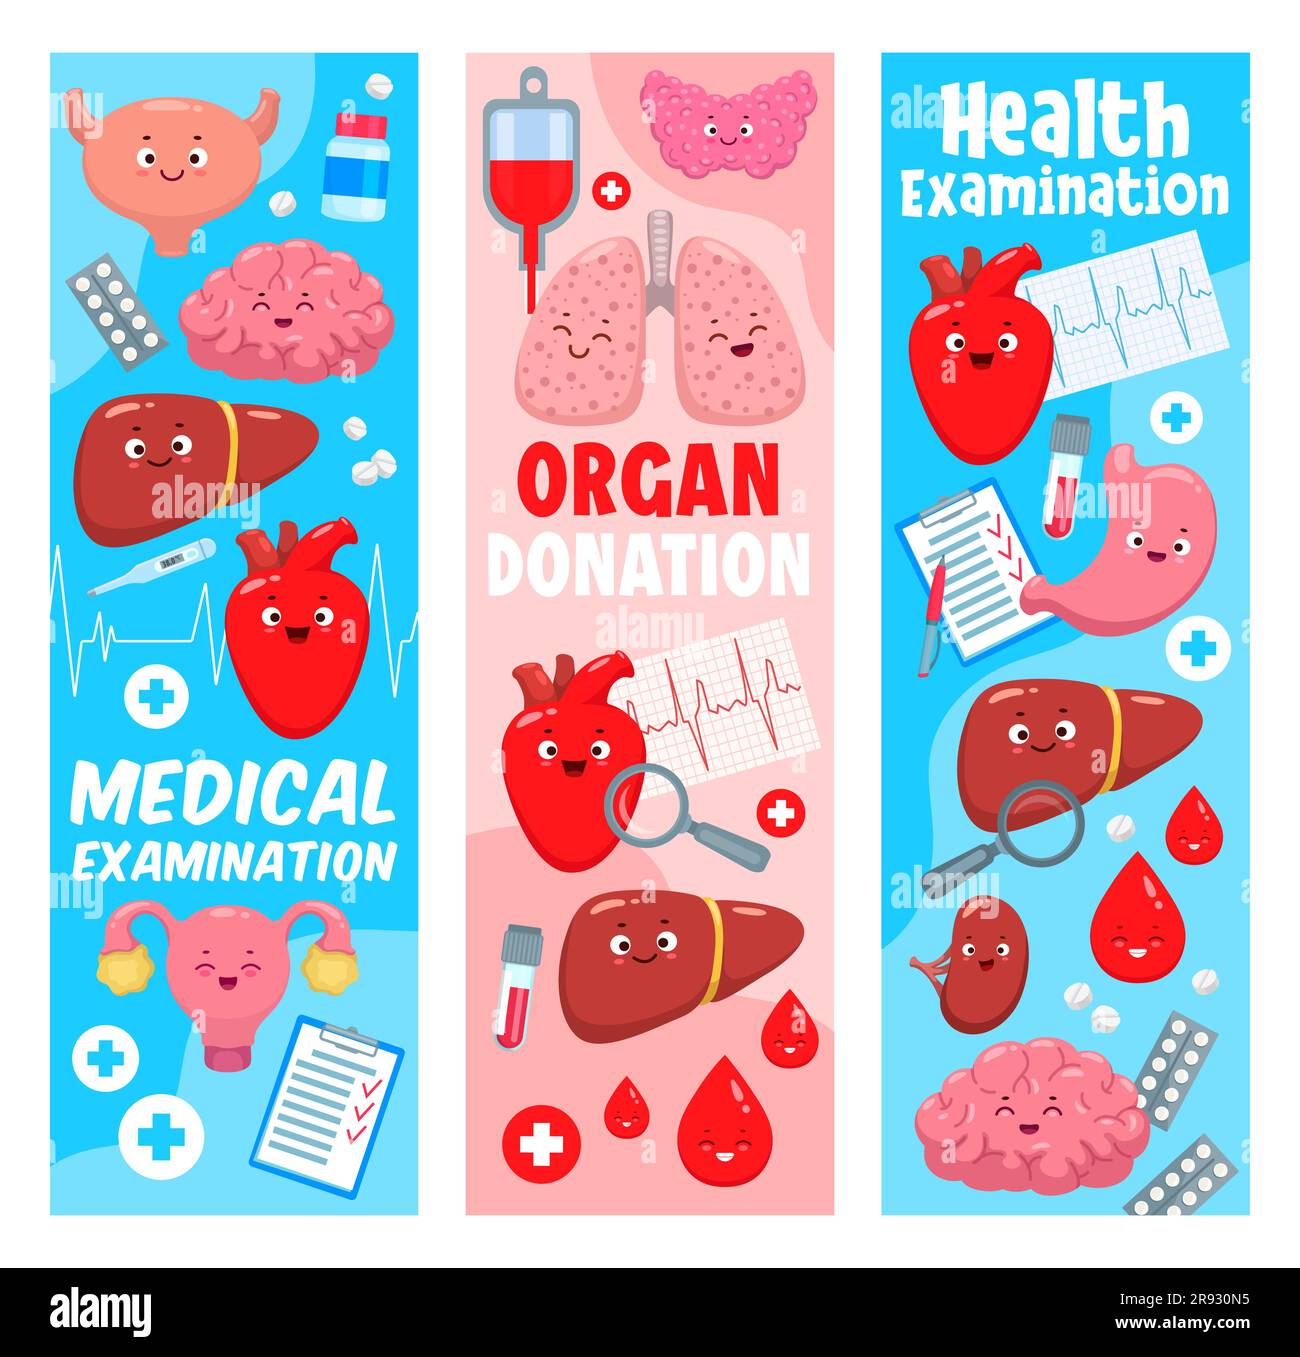 Cartoon-Körperorgancharaktere. Organspende, Behandlung, Medikamente. Gesundheitsuntersuchung und Medizin Vektorbanner mit Blase, Gehirn, Leber und Herz, Uterus, Lungen, Medizin-Pillen süße Persönlichkeiten Stock Vektor